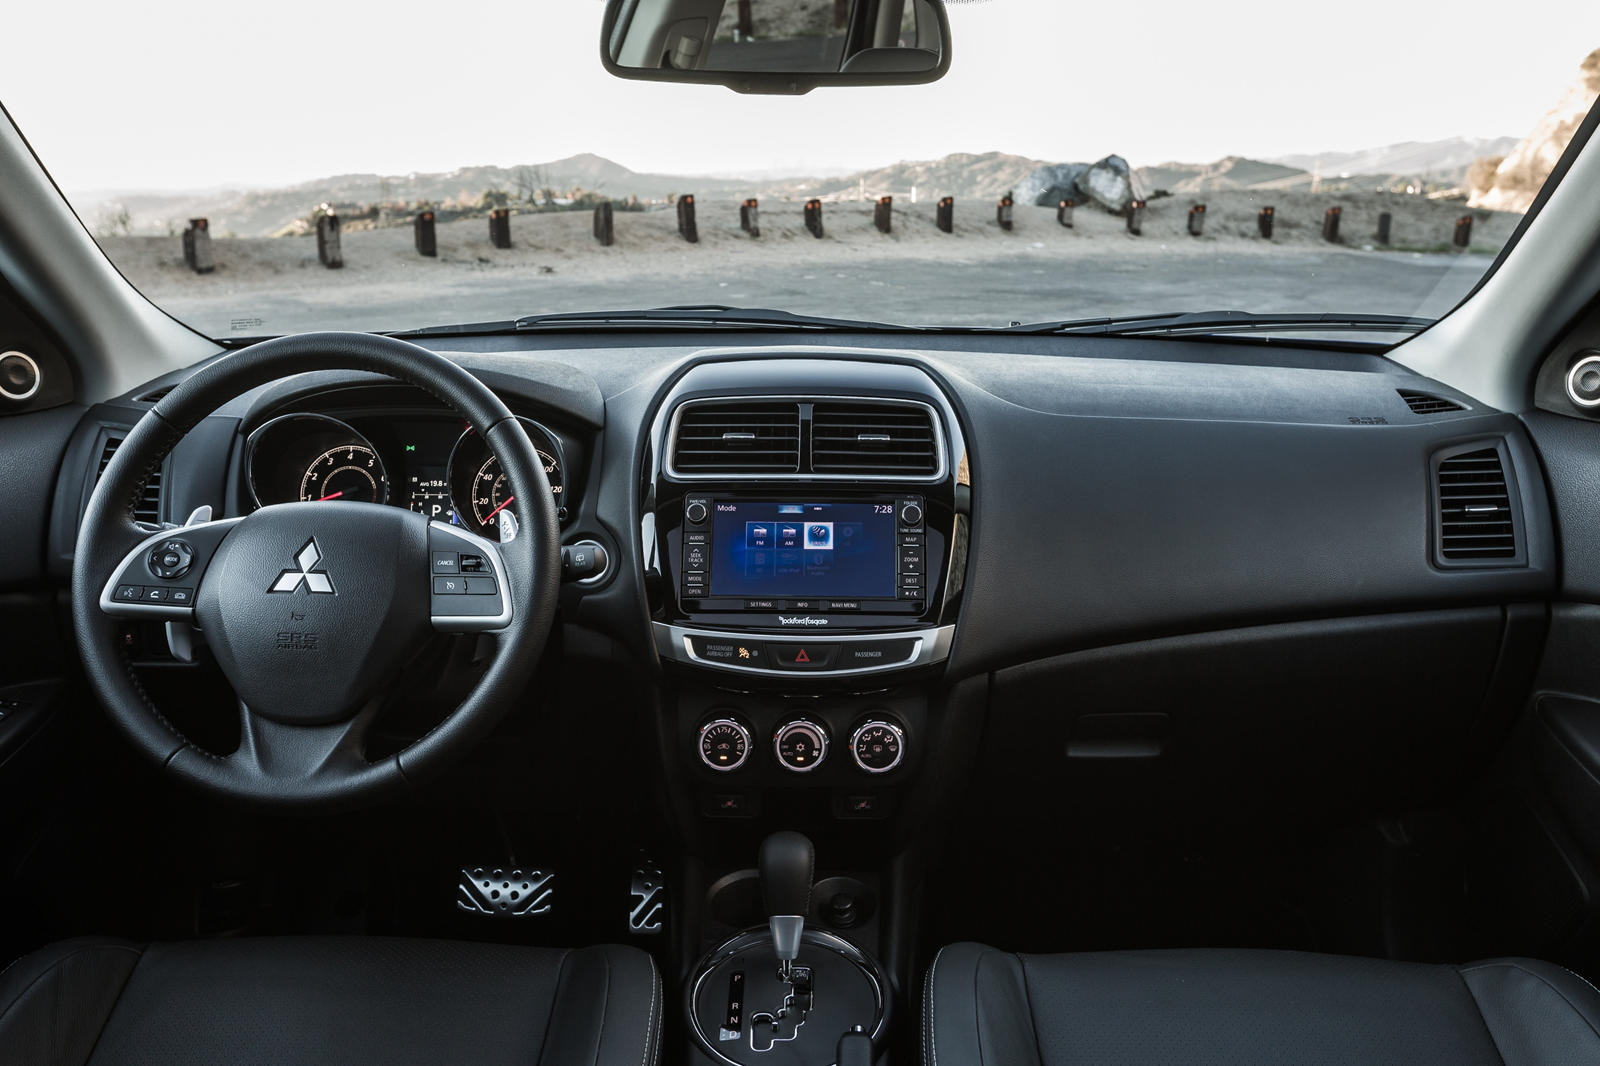 2014 Mitsubishi Outlander Sport Dashboard